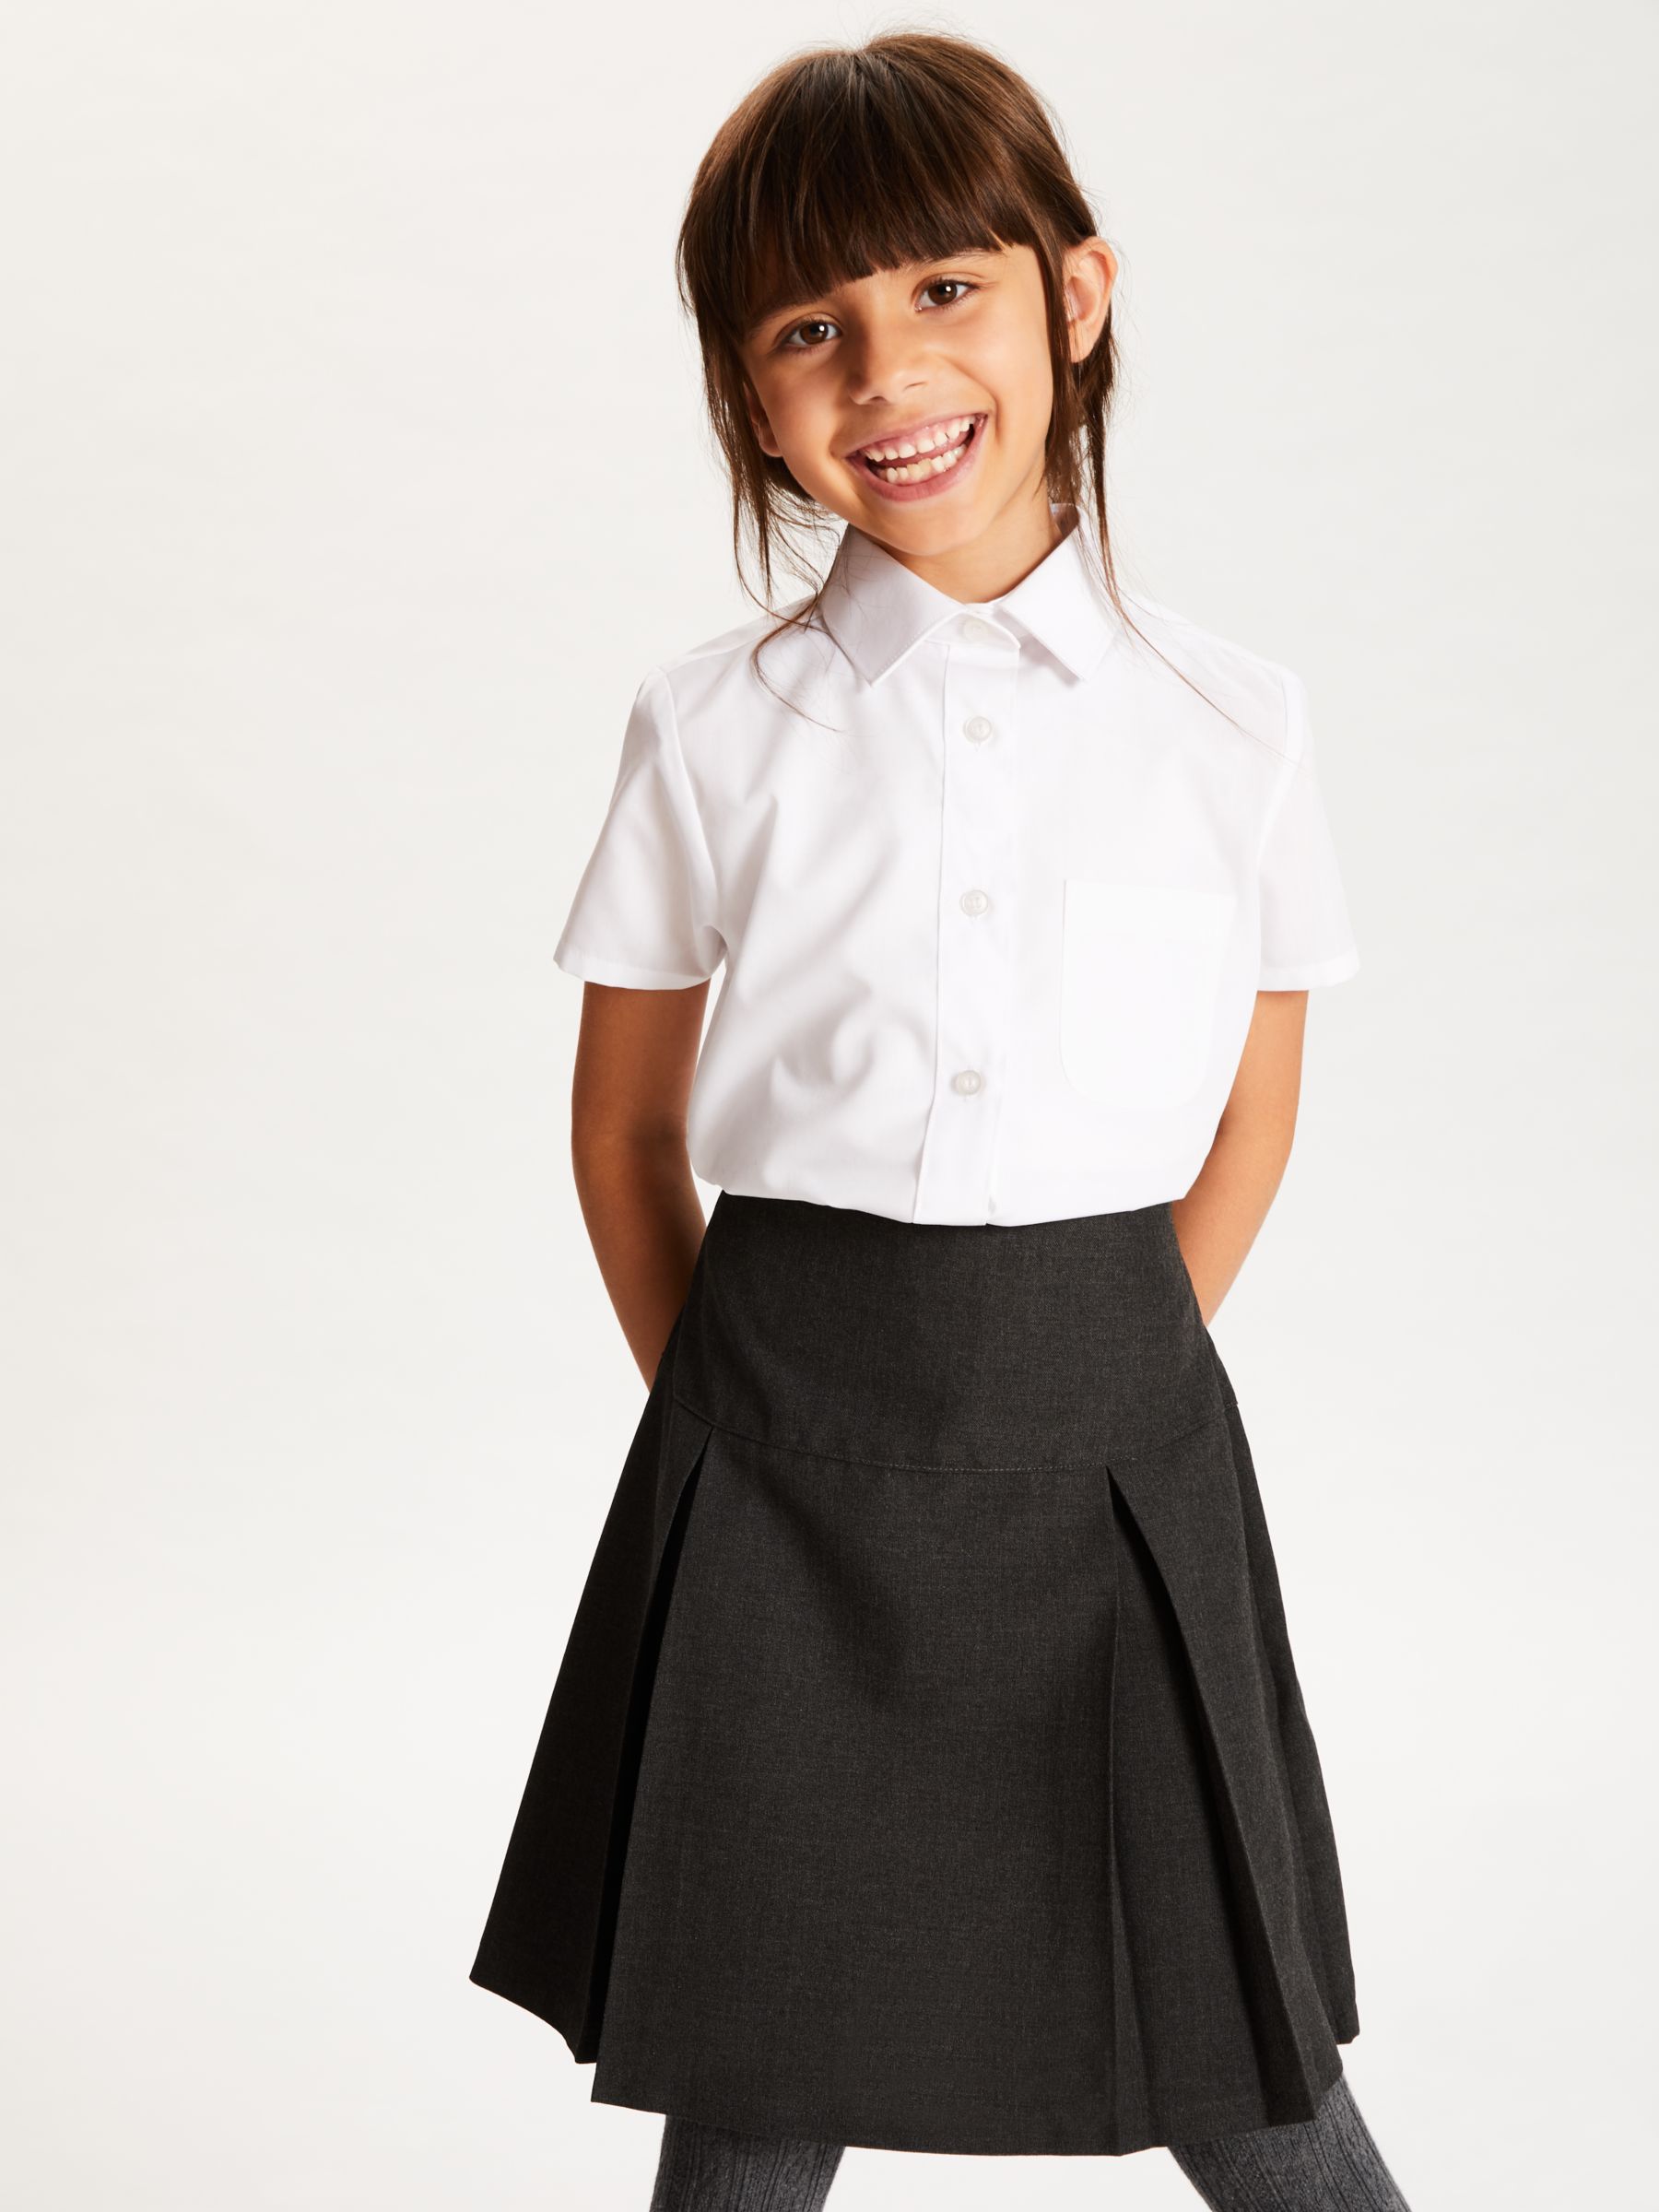 John Lewis & Partners The Basics Girls' Short Sleeve School Blouse, Pack of 3, White